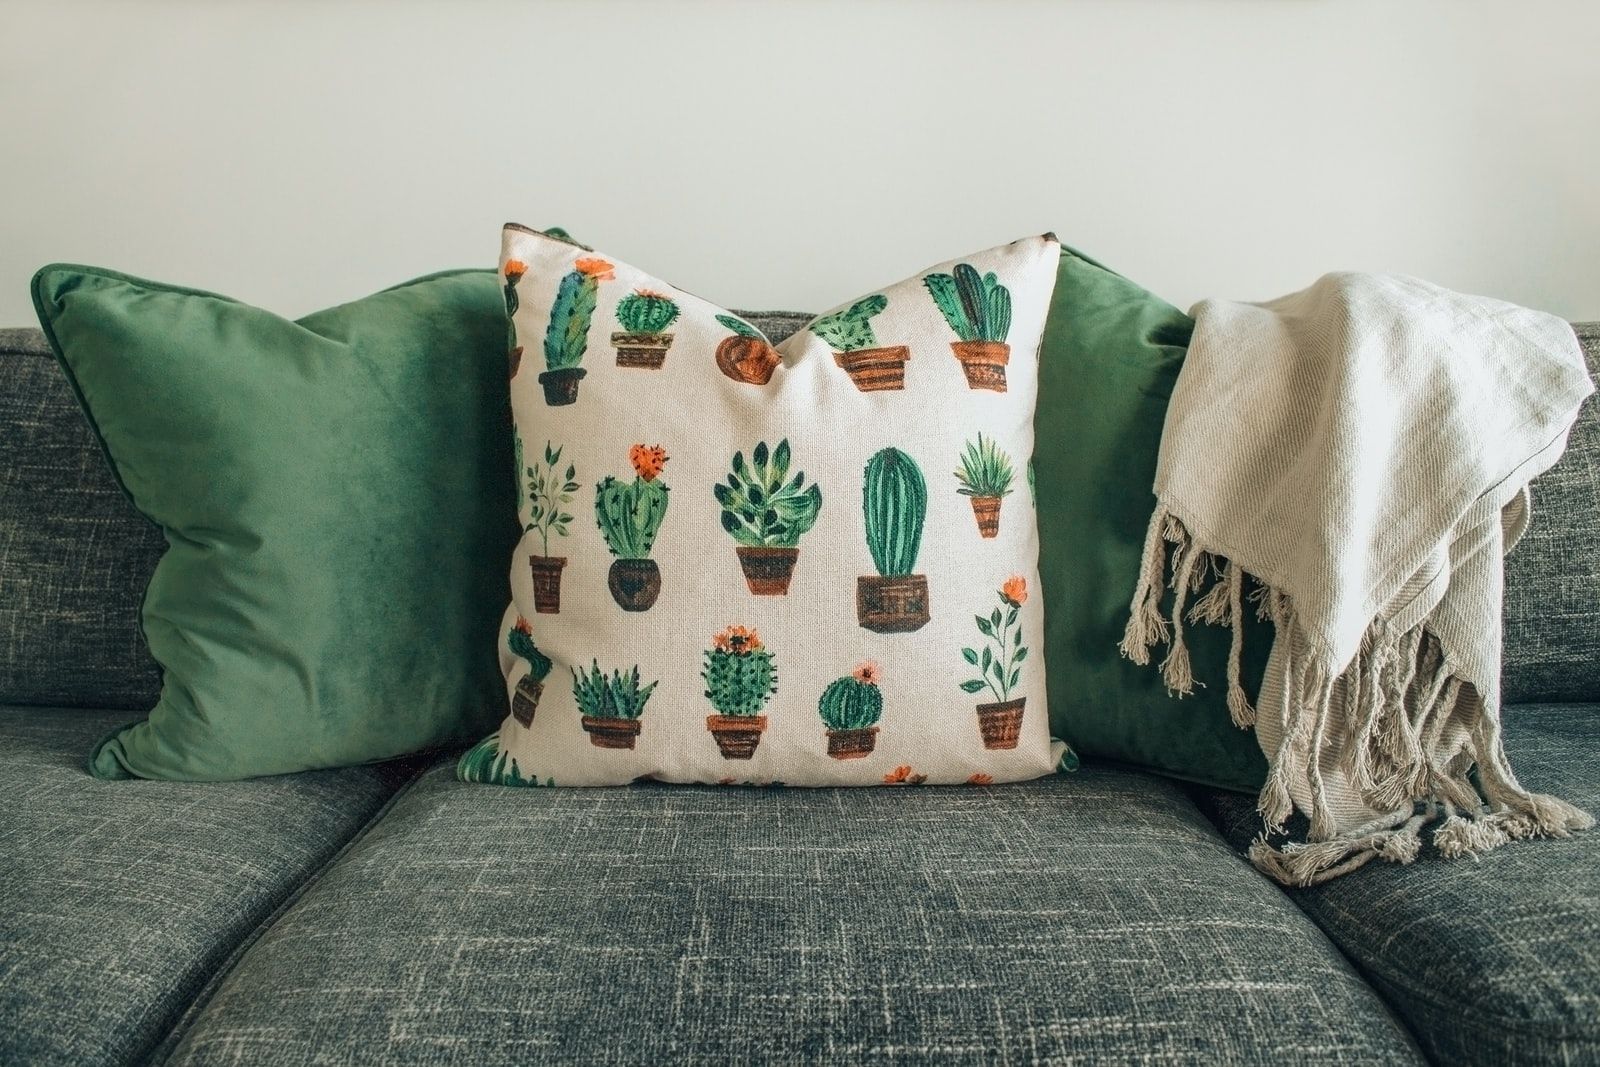 2 coussins verts et un avec des motifs cacti sur un canapé vert